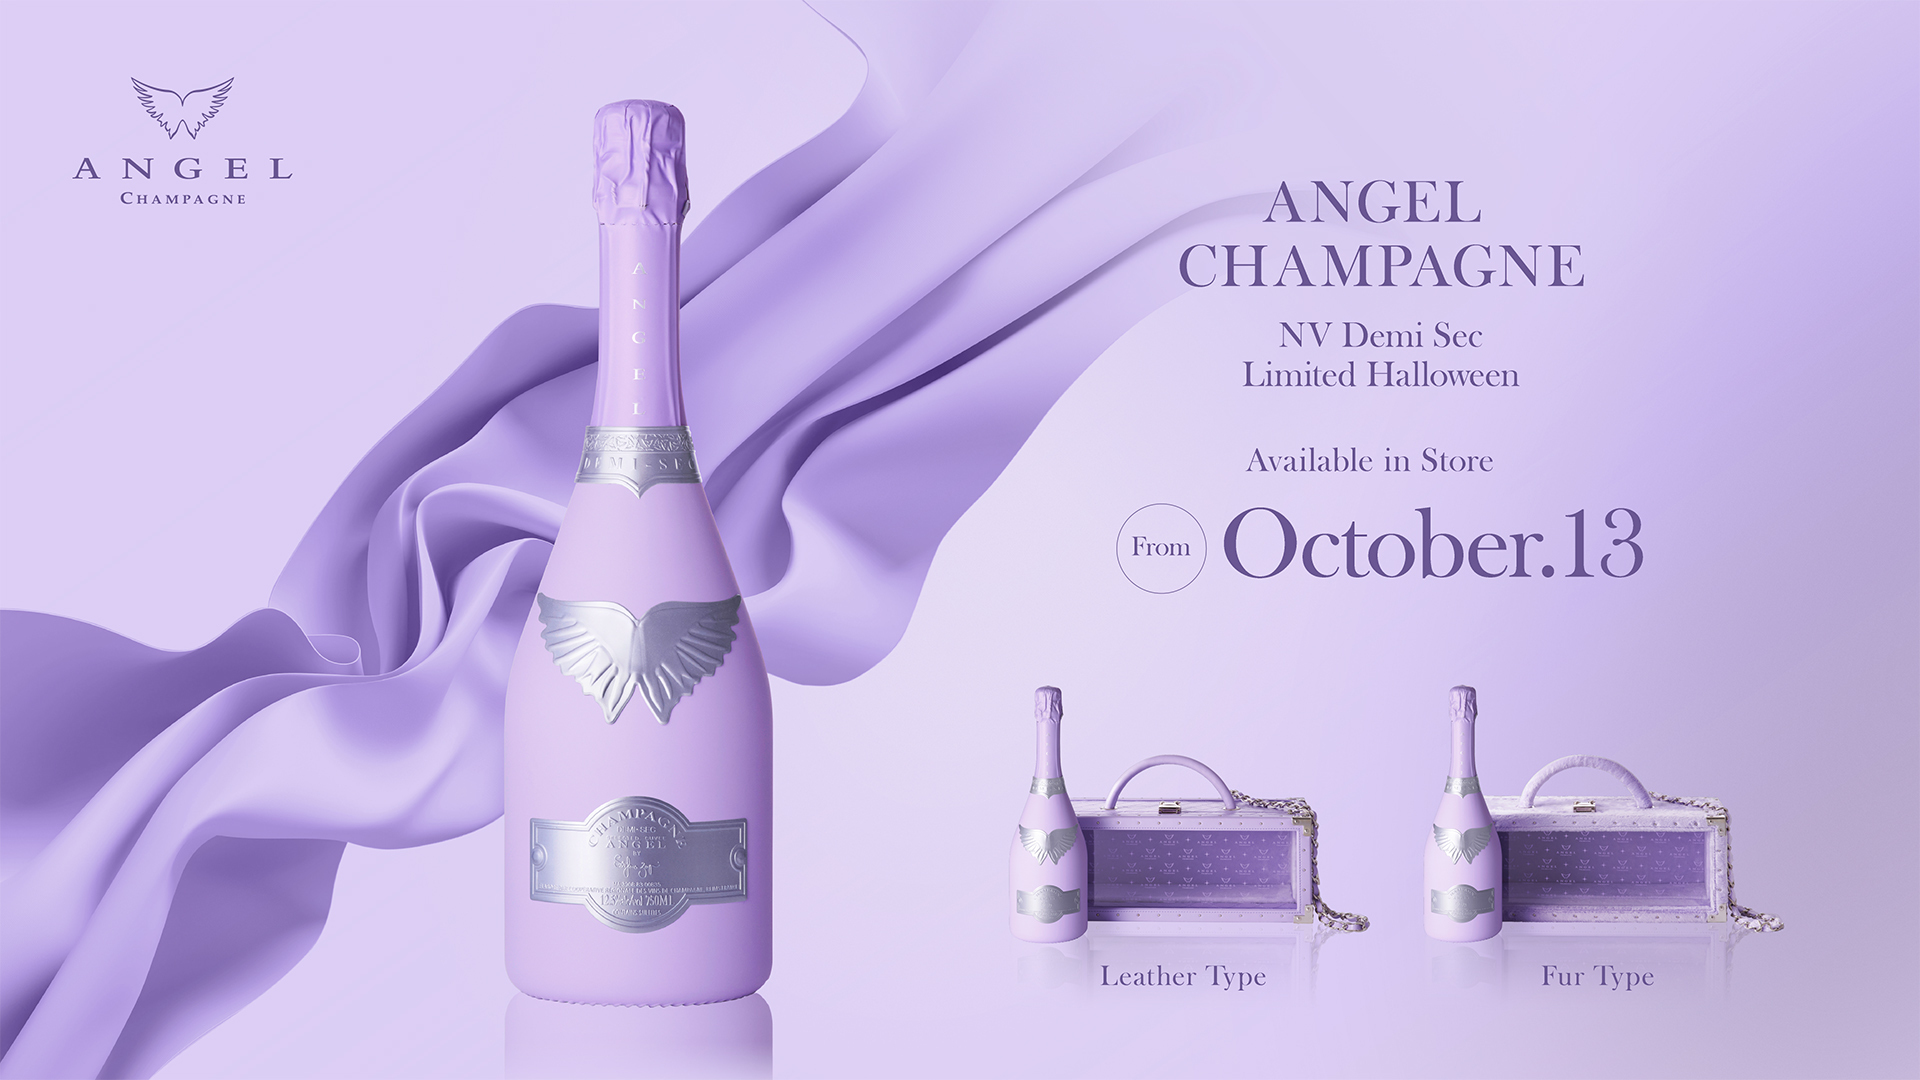 大人気『Demi Sec Series』から新色登場！
ラグジュアリーシャンパンブランド“ANGEL CHAMPAGNE”が
ハロウィーン限定『Limited Halloween』を10月13日(金)発売！